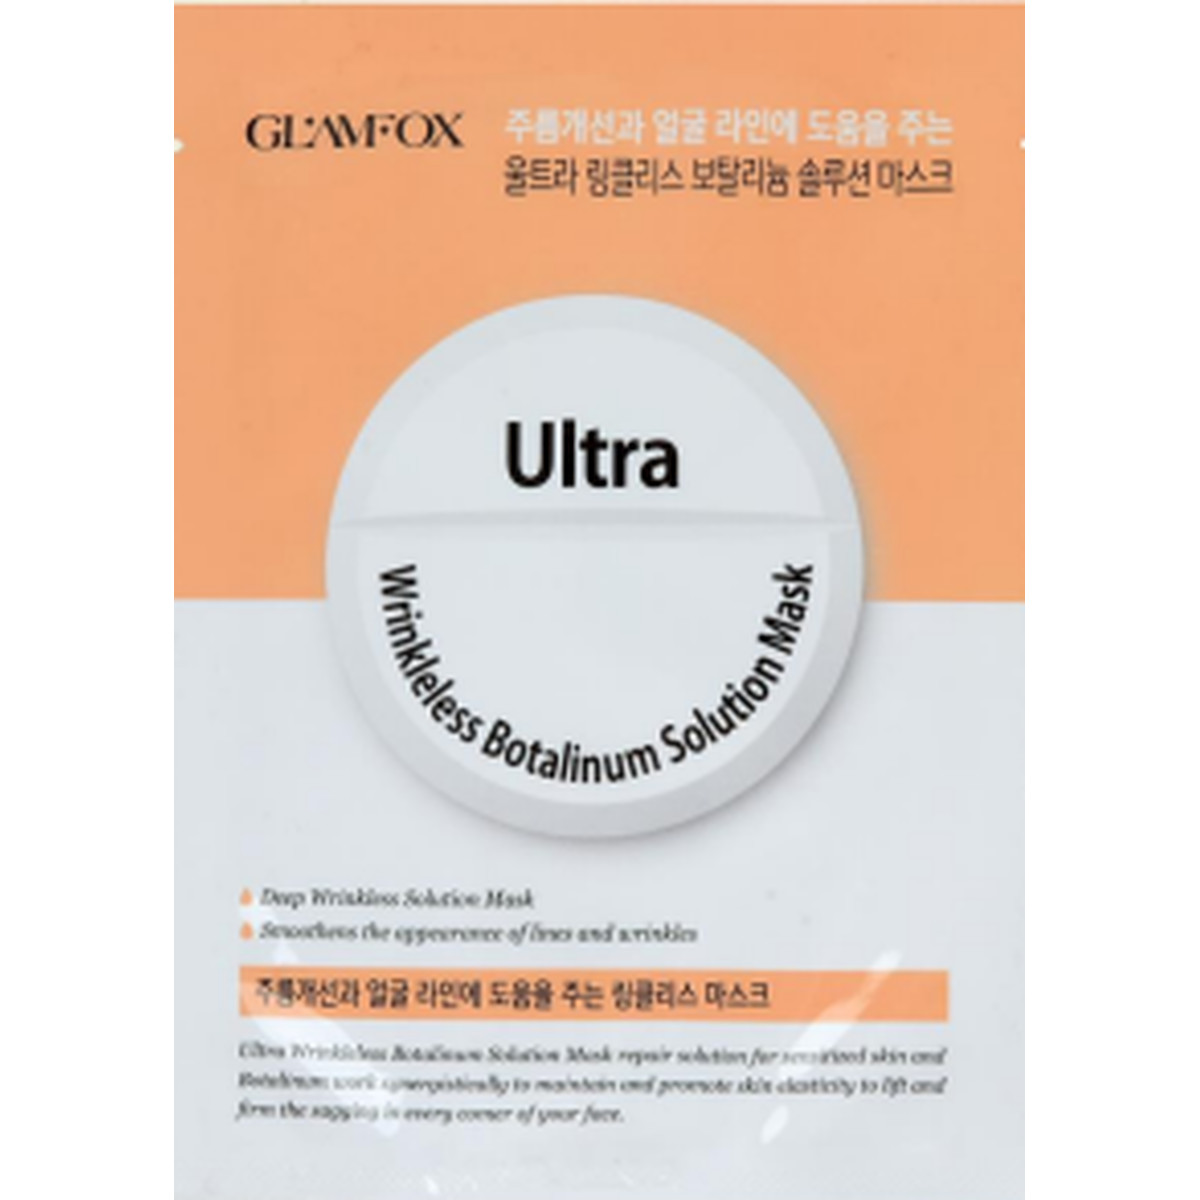 Glamfox Ultra Wrinkleless Peptide Solution Mask Przeciwzmarszczkowa Peptydowa Maska W Płachcie Do Skóry Dojrzałej, Ze Zmarszczkami. 25g